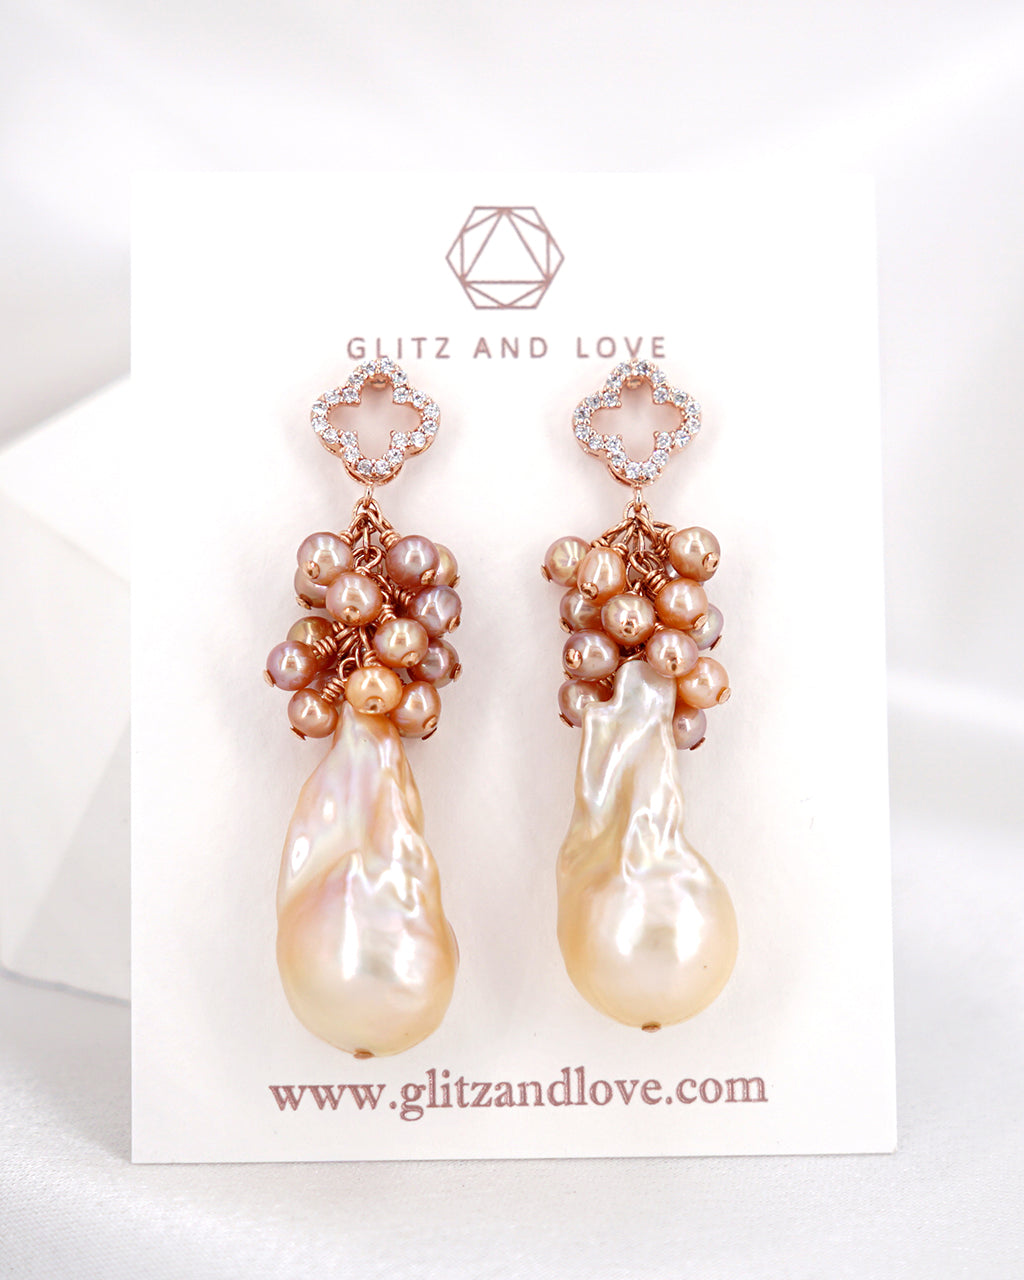 Peach Fuzz Baroque Pearl Earrings - Pearl Cluster Long Earrings